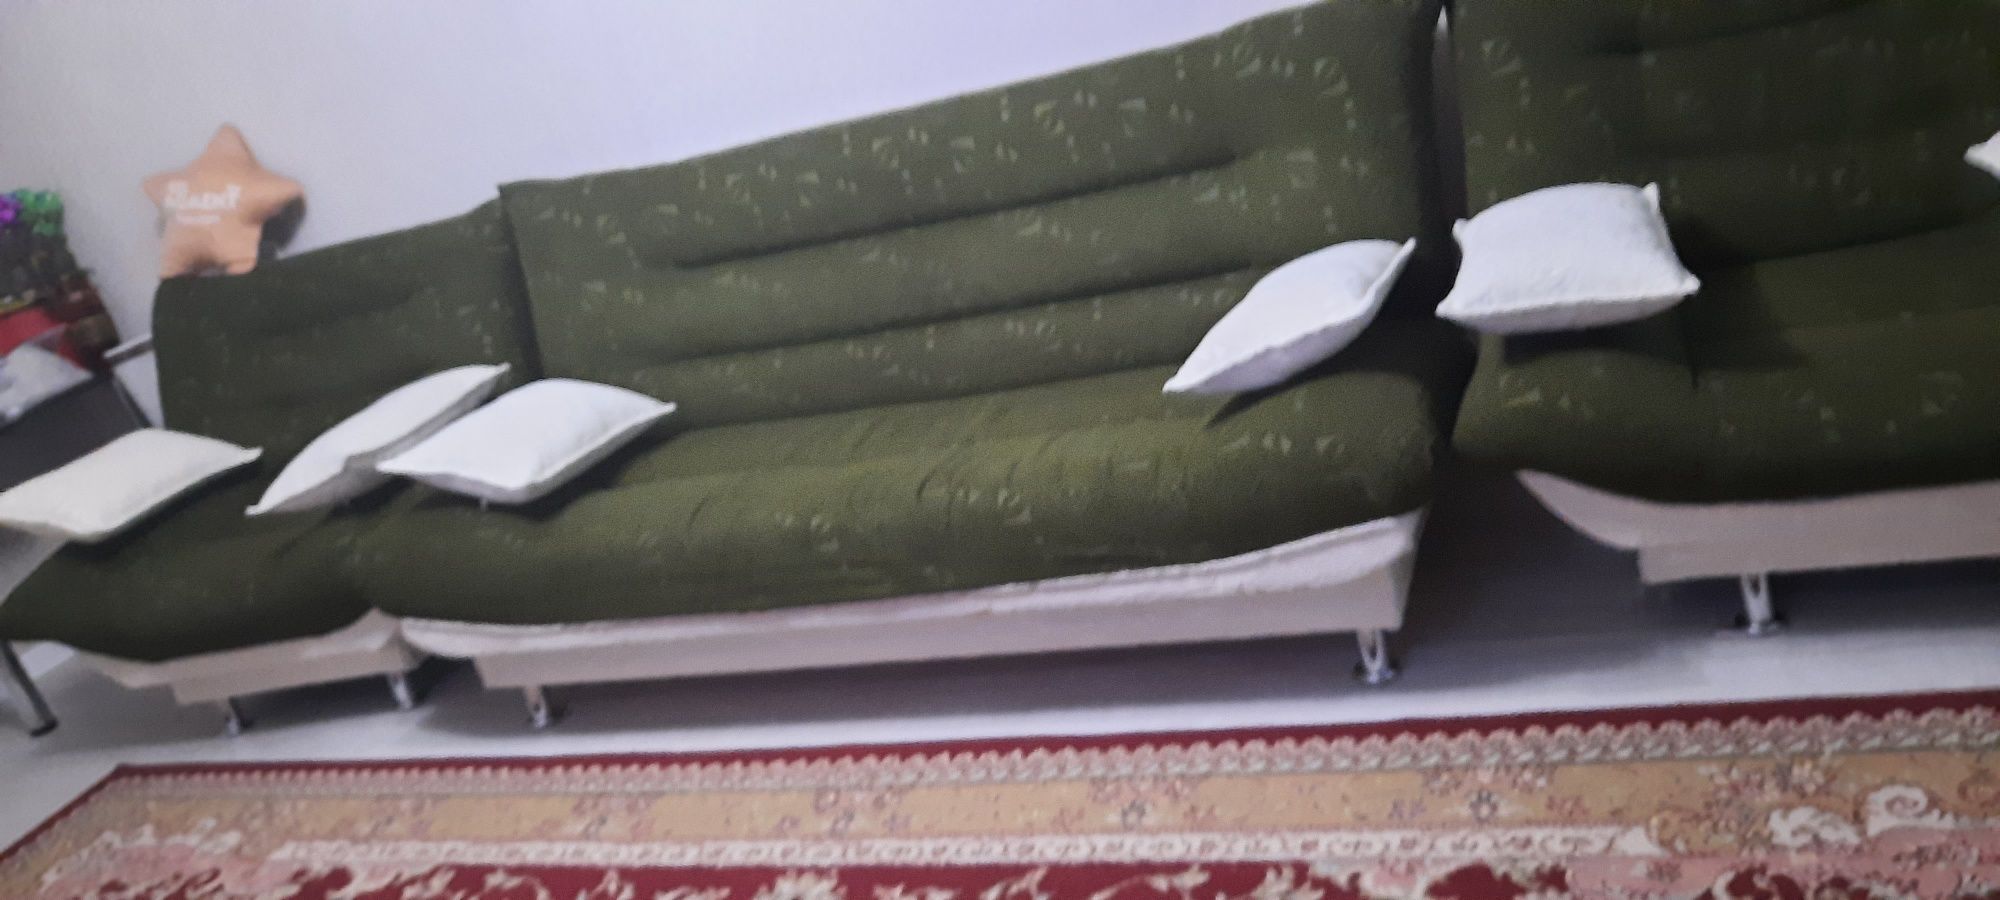 Продам диван  с двумя креслами